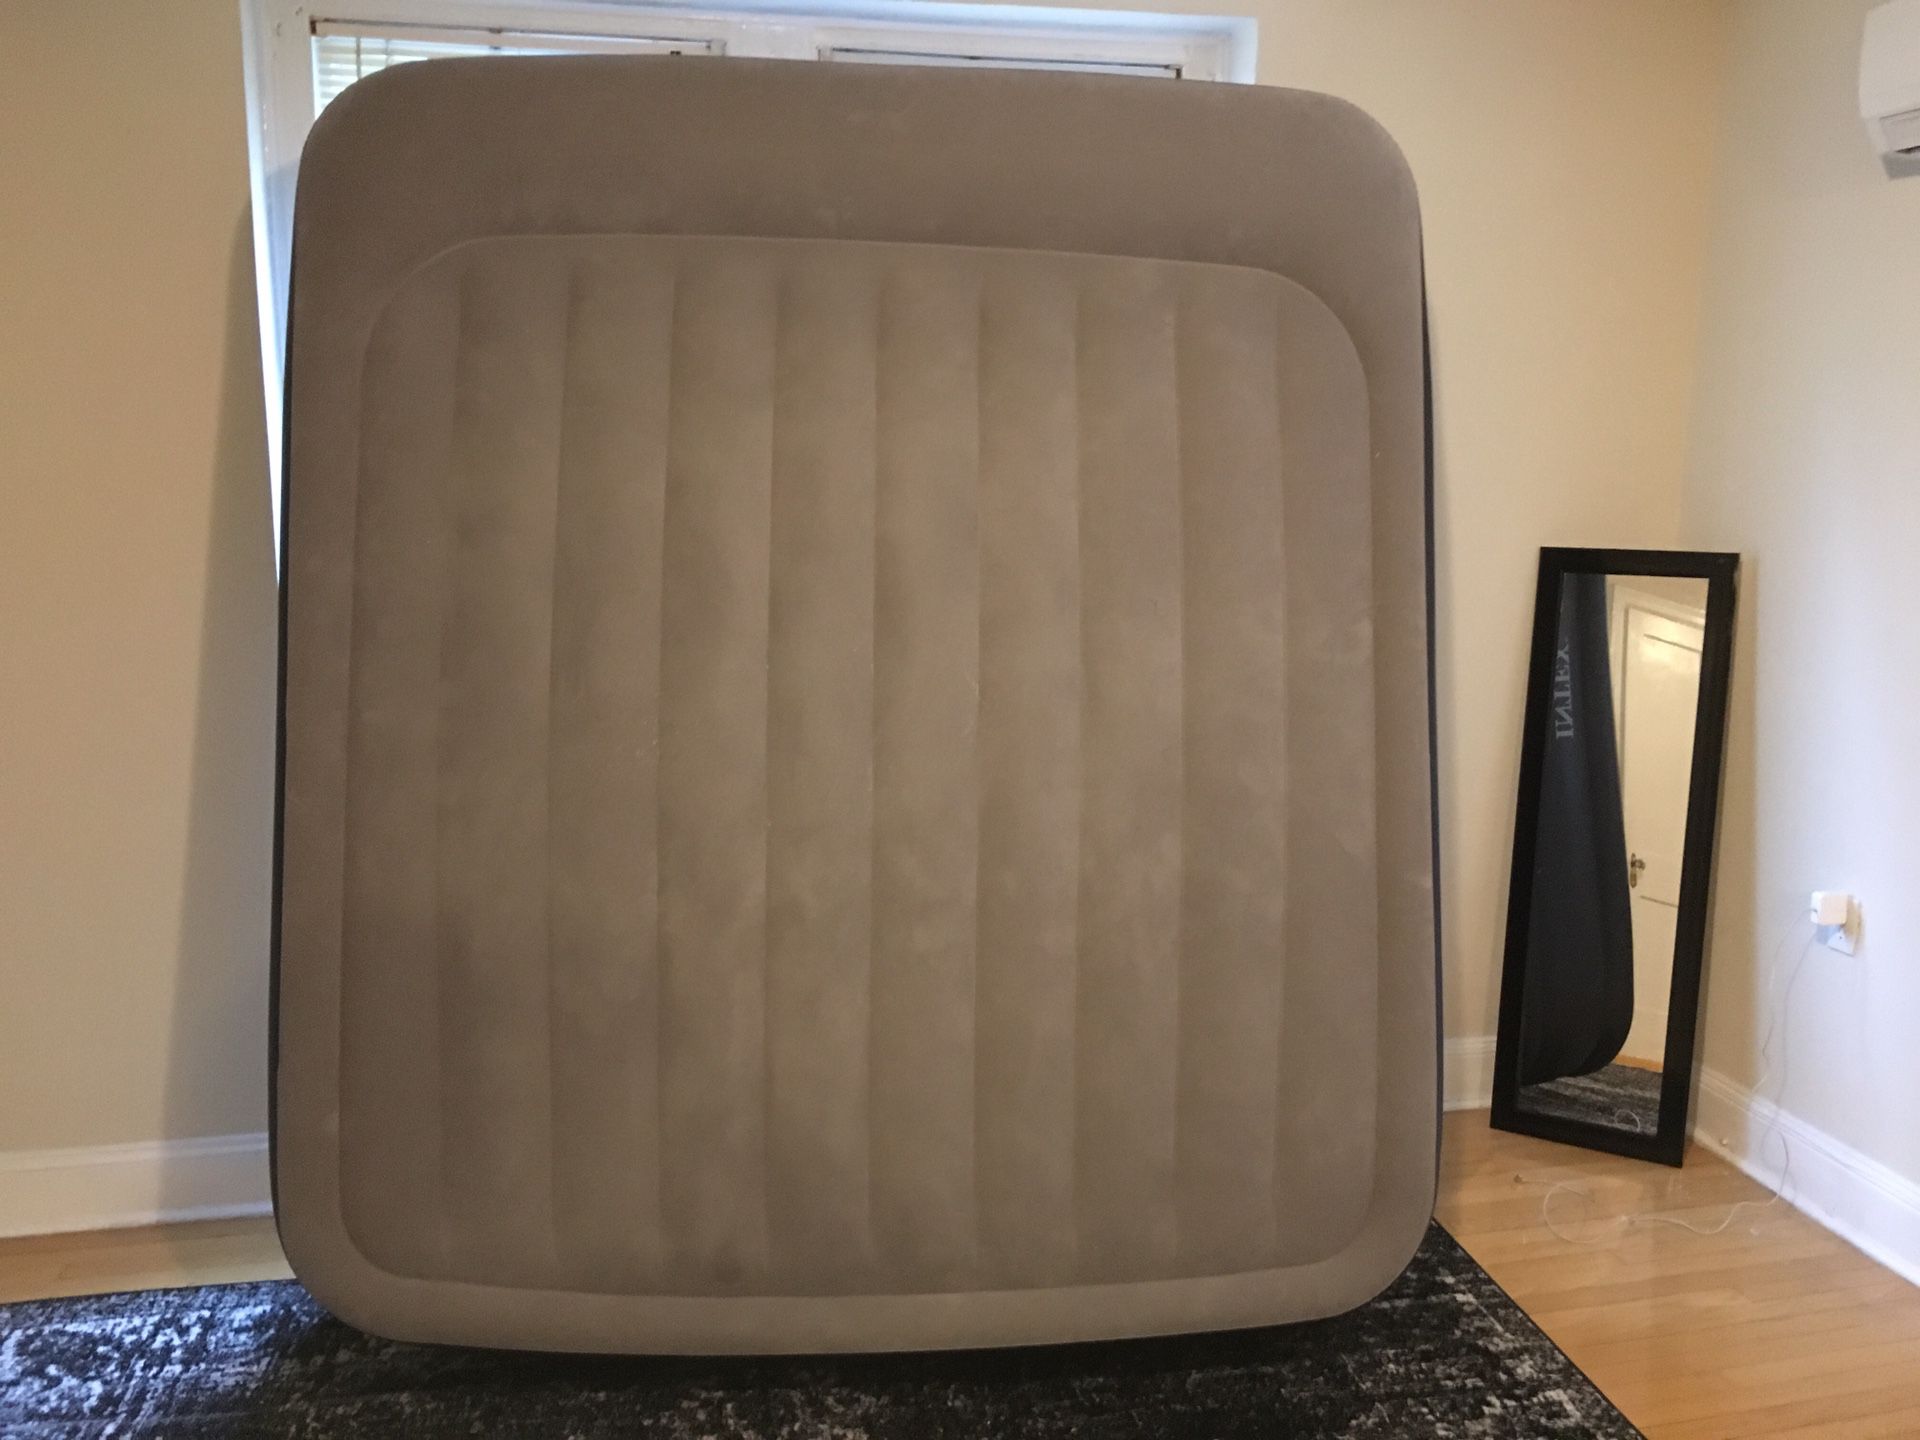 King size air mattress brand new